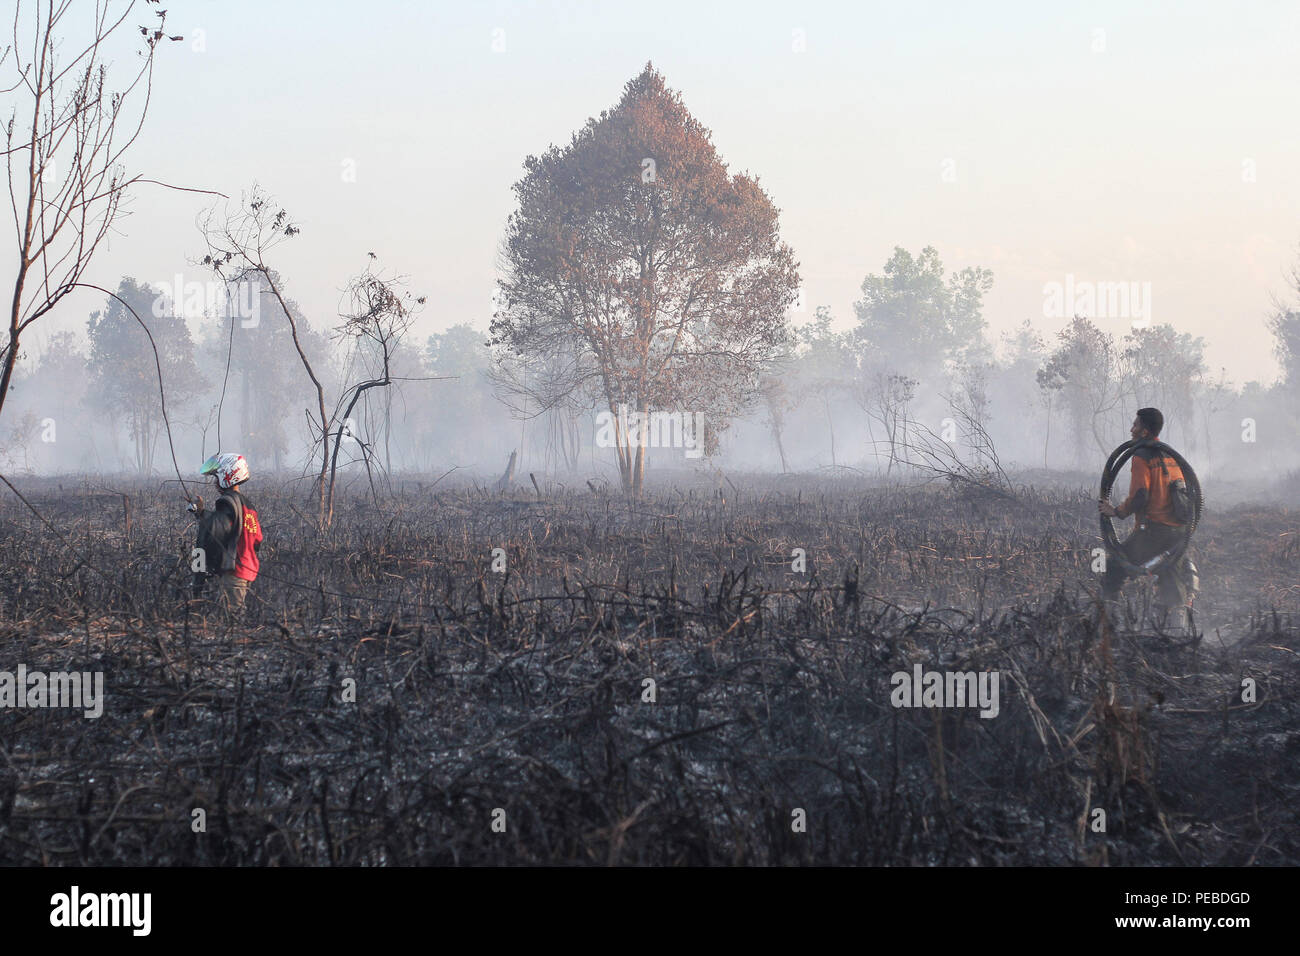 L'Indonésie, Riau, Kampar. 13Th Aug 2018. Un bombardement de l'eau a baissé d'hélicoptère de l'eau pour éteindre le feu dans la province de Riau, Kampar, Indonésie, le 13 août 2017. Les incendies de forêt et de plantation sur l'île indonésienne de Sumatra a été causé par la saison sèche. Chef des pompiers sur les lieux pour éteindre les feux de tourbières dans la région de Riau, Kampar, Indonésie, le 13 août 2018. Plusieurs provinces de l'Indonésie ont mis l'état d'alerte d'urgence pour les feux de forêts et des terres. Credit : Mohammad Adam/Alamy Live News Banque D'Images